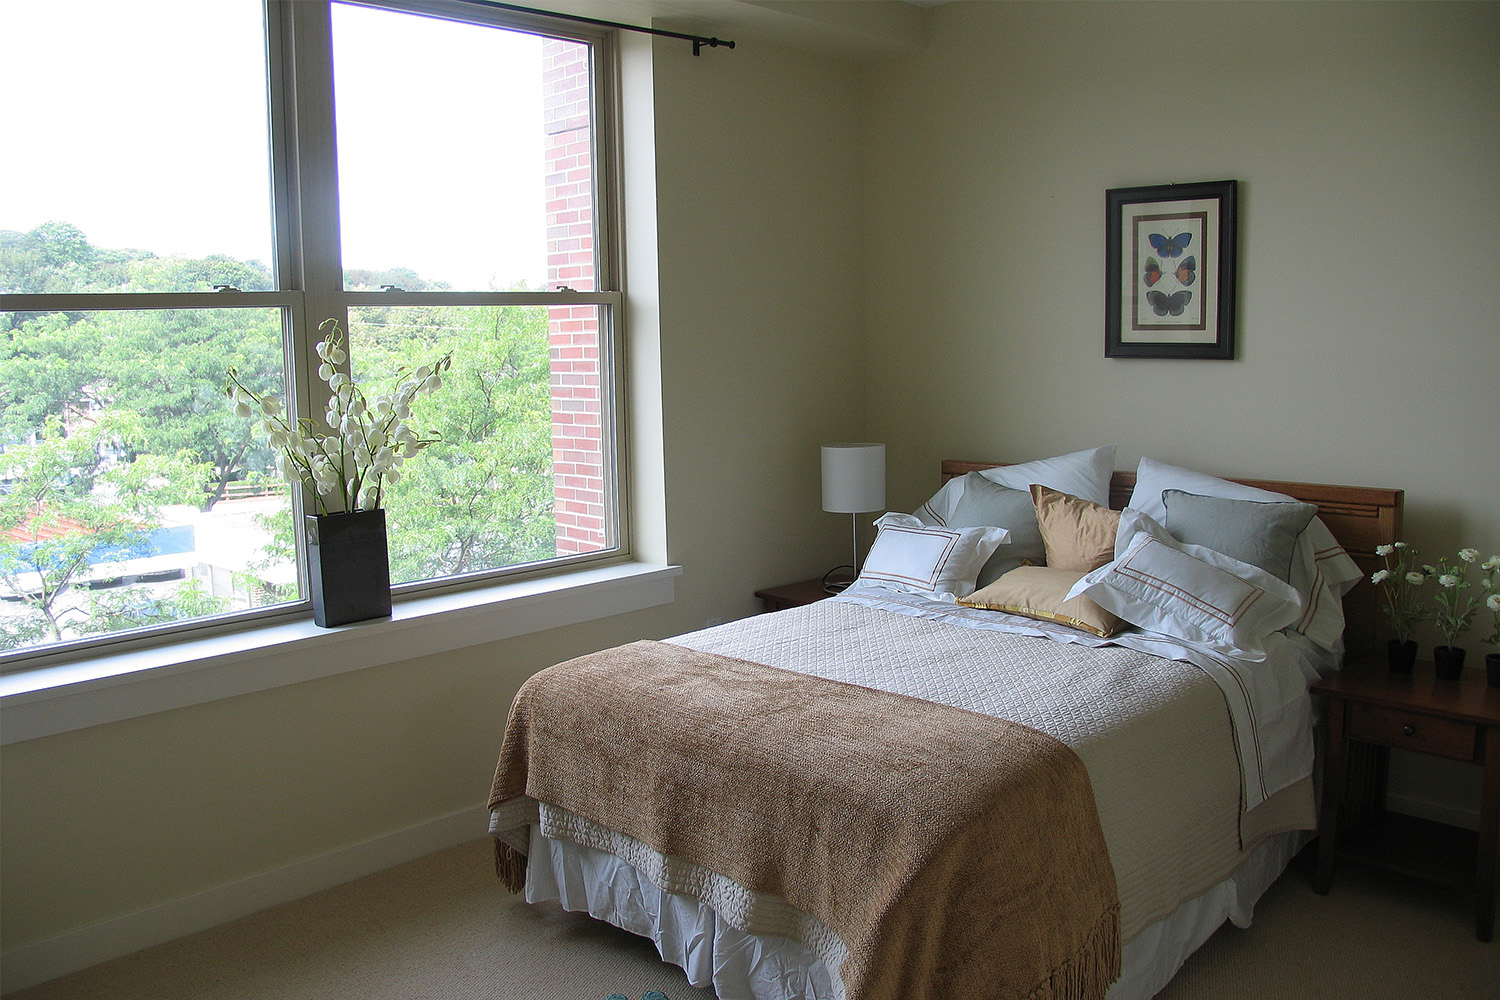 Quaint bedroom with wide window